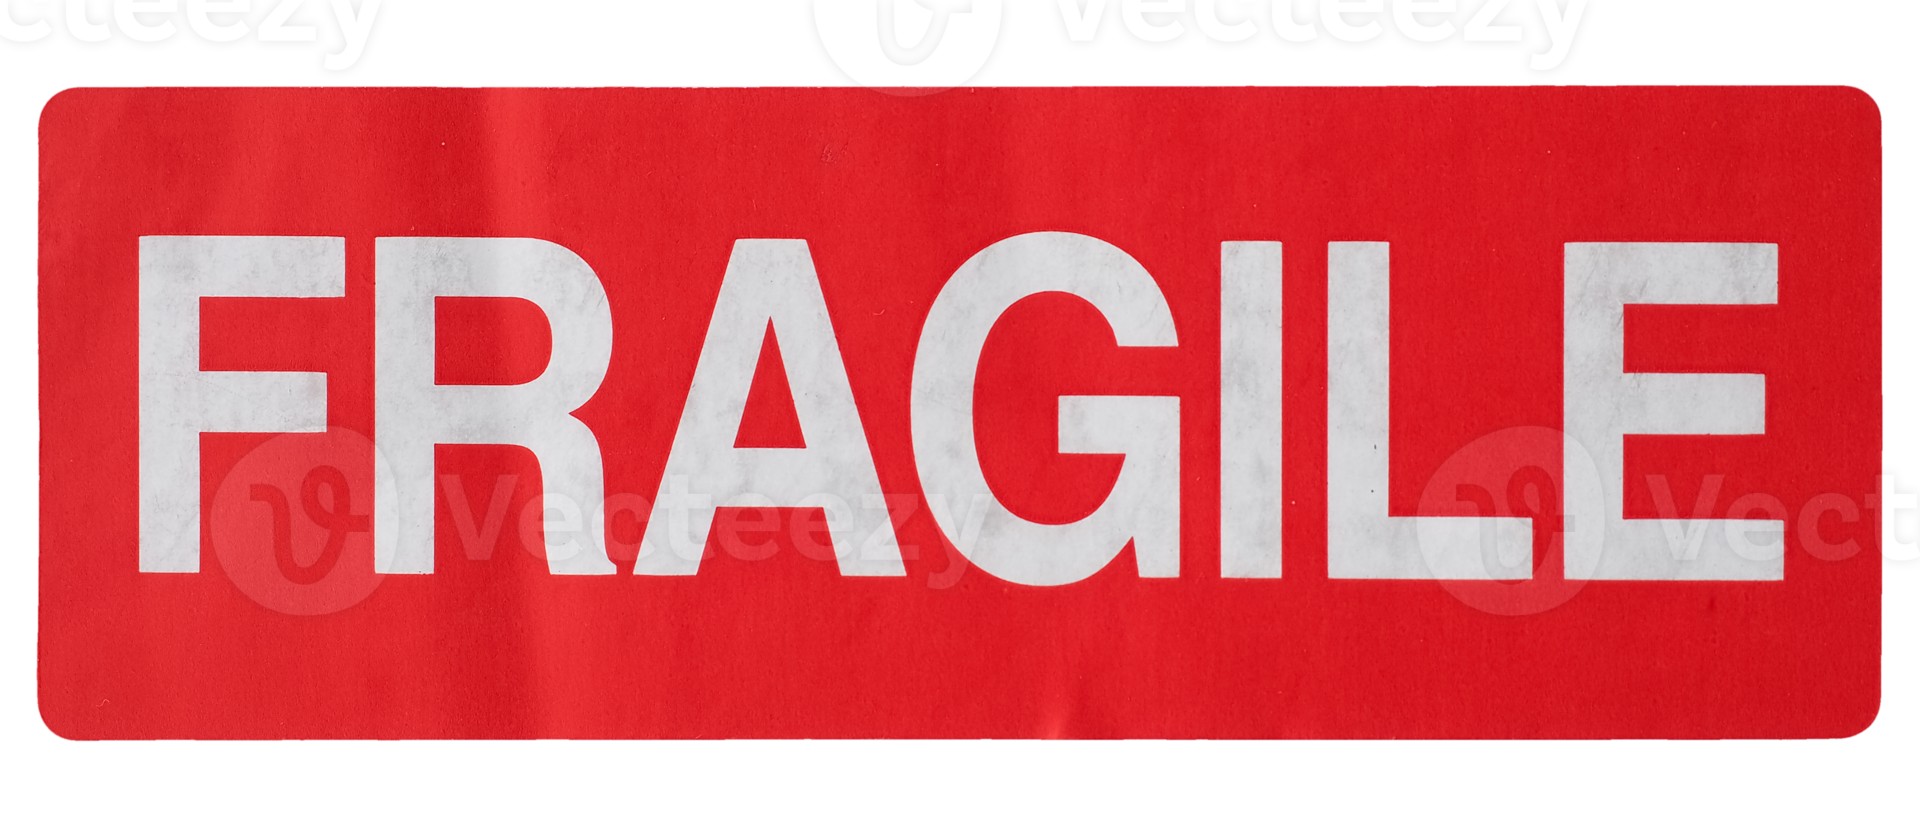 fragile sign label sign transparent PNG